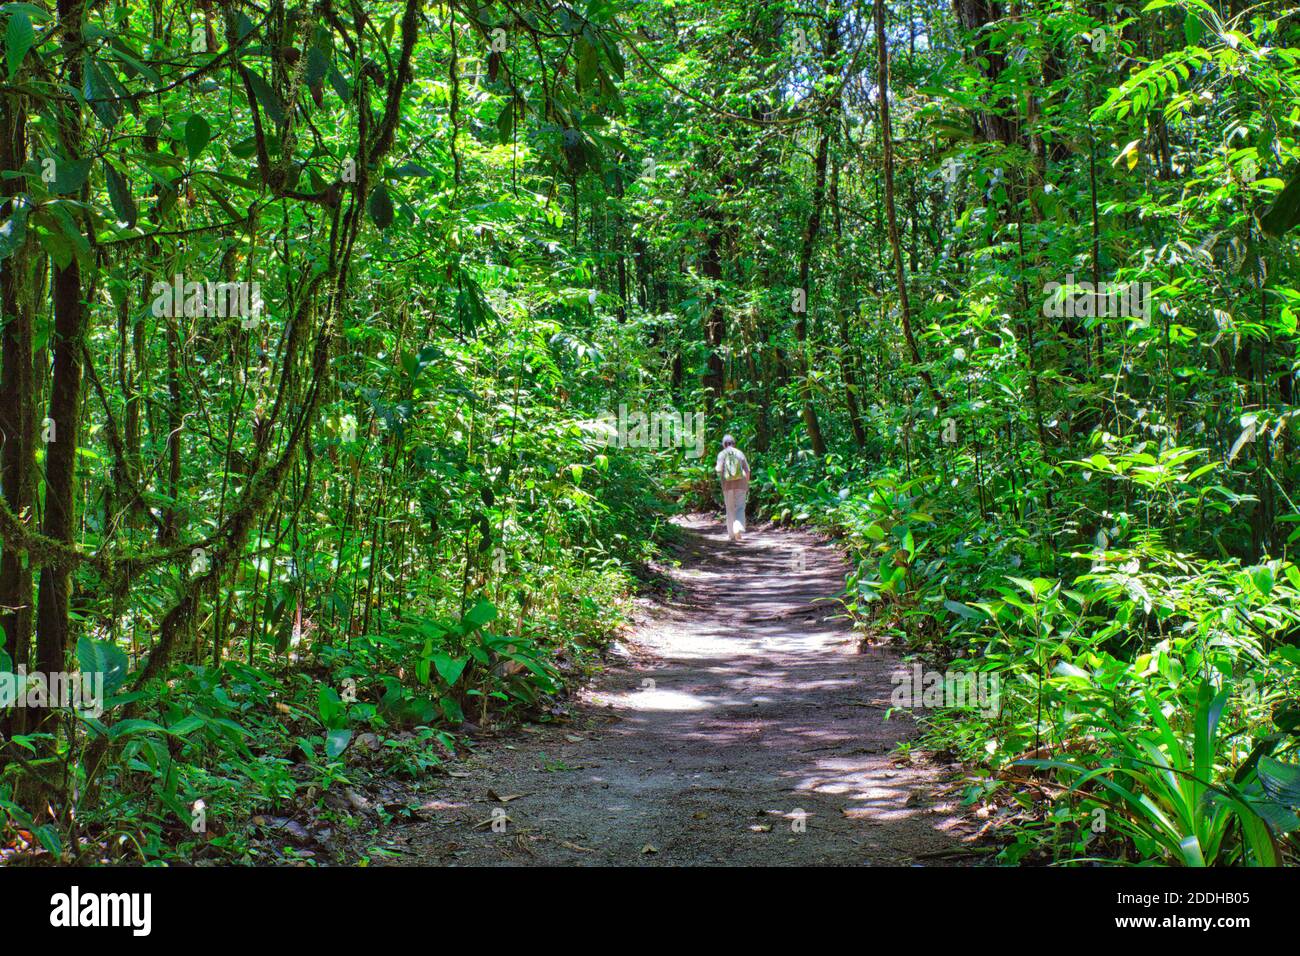 Delizioso percorso attraverso la foresta pluviale con una persona che cammina in lontananza nell'area delle Cascate di Kaiteur, Guyana, Sud America Foto Stock